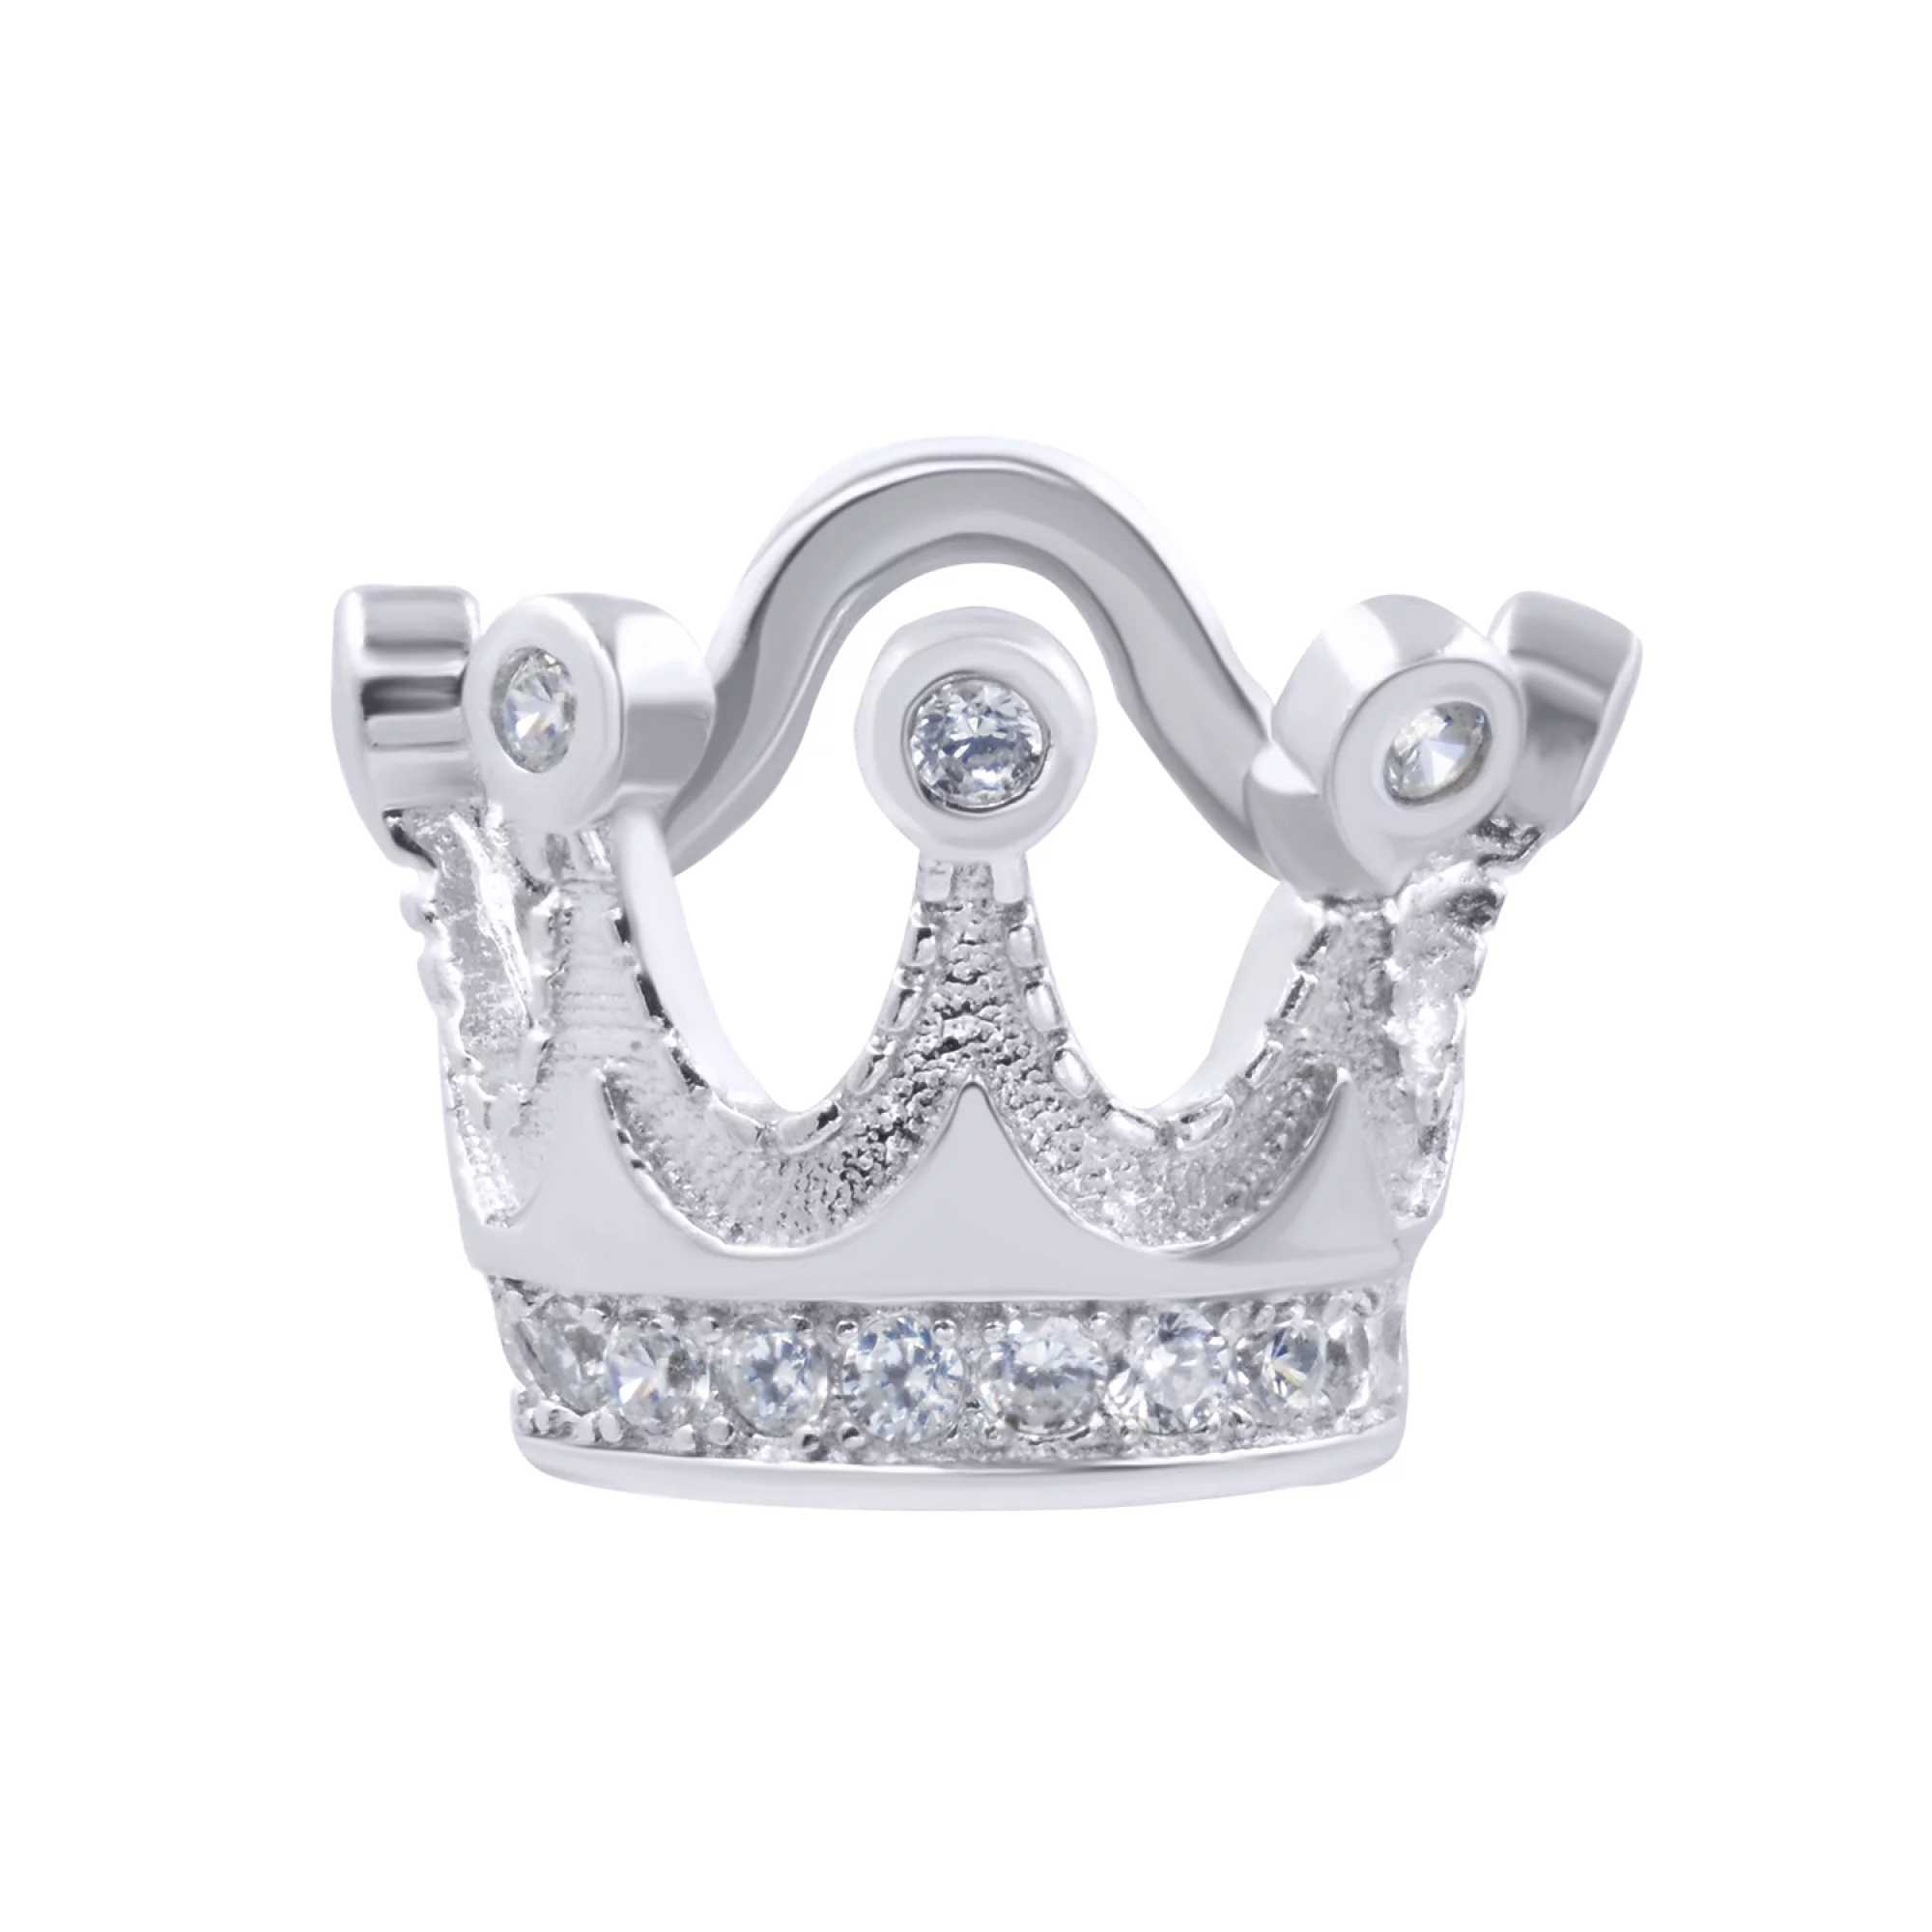 Срібна підвіска "Корона" з цирконієм - 421426 – зображення 1